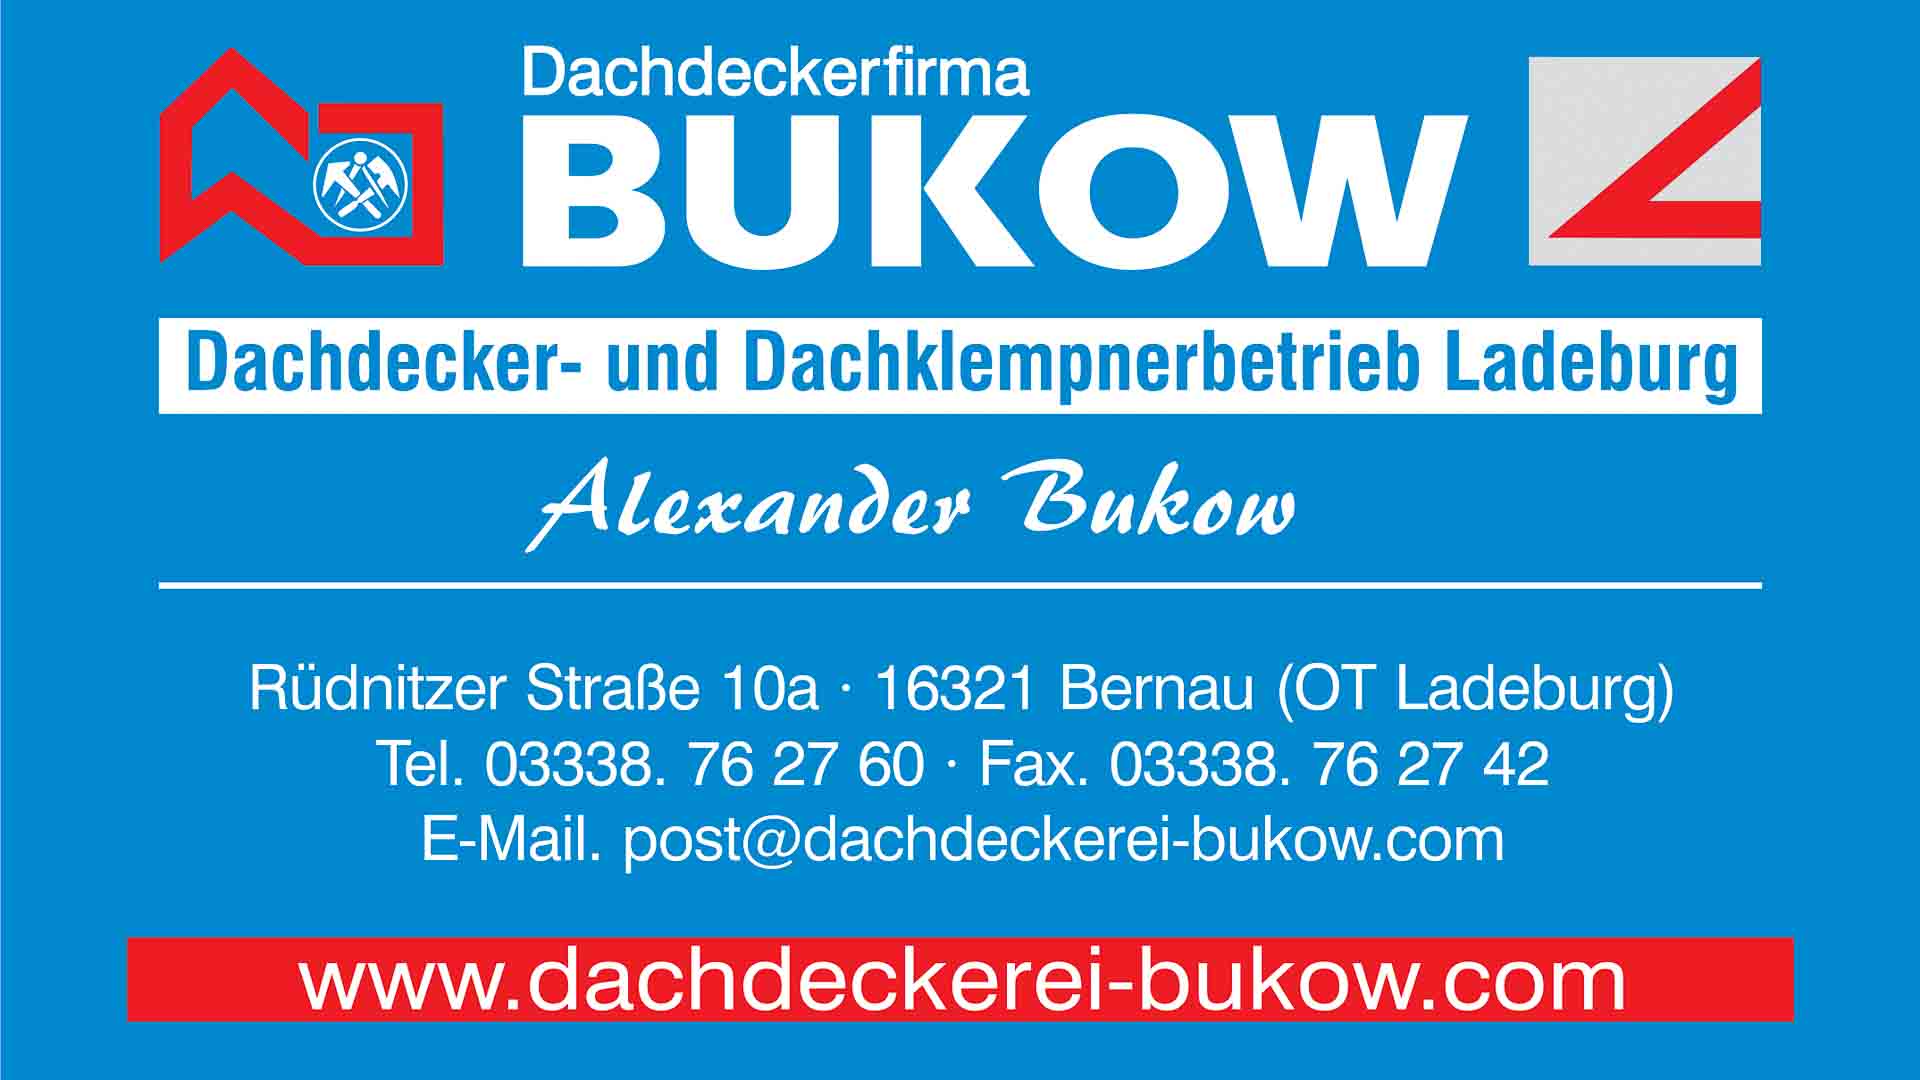 Dachdecker / Zimmermann (m/w/d) - Dachdeckerfirma Bukow e.Kfm. in Bernau